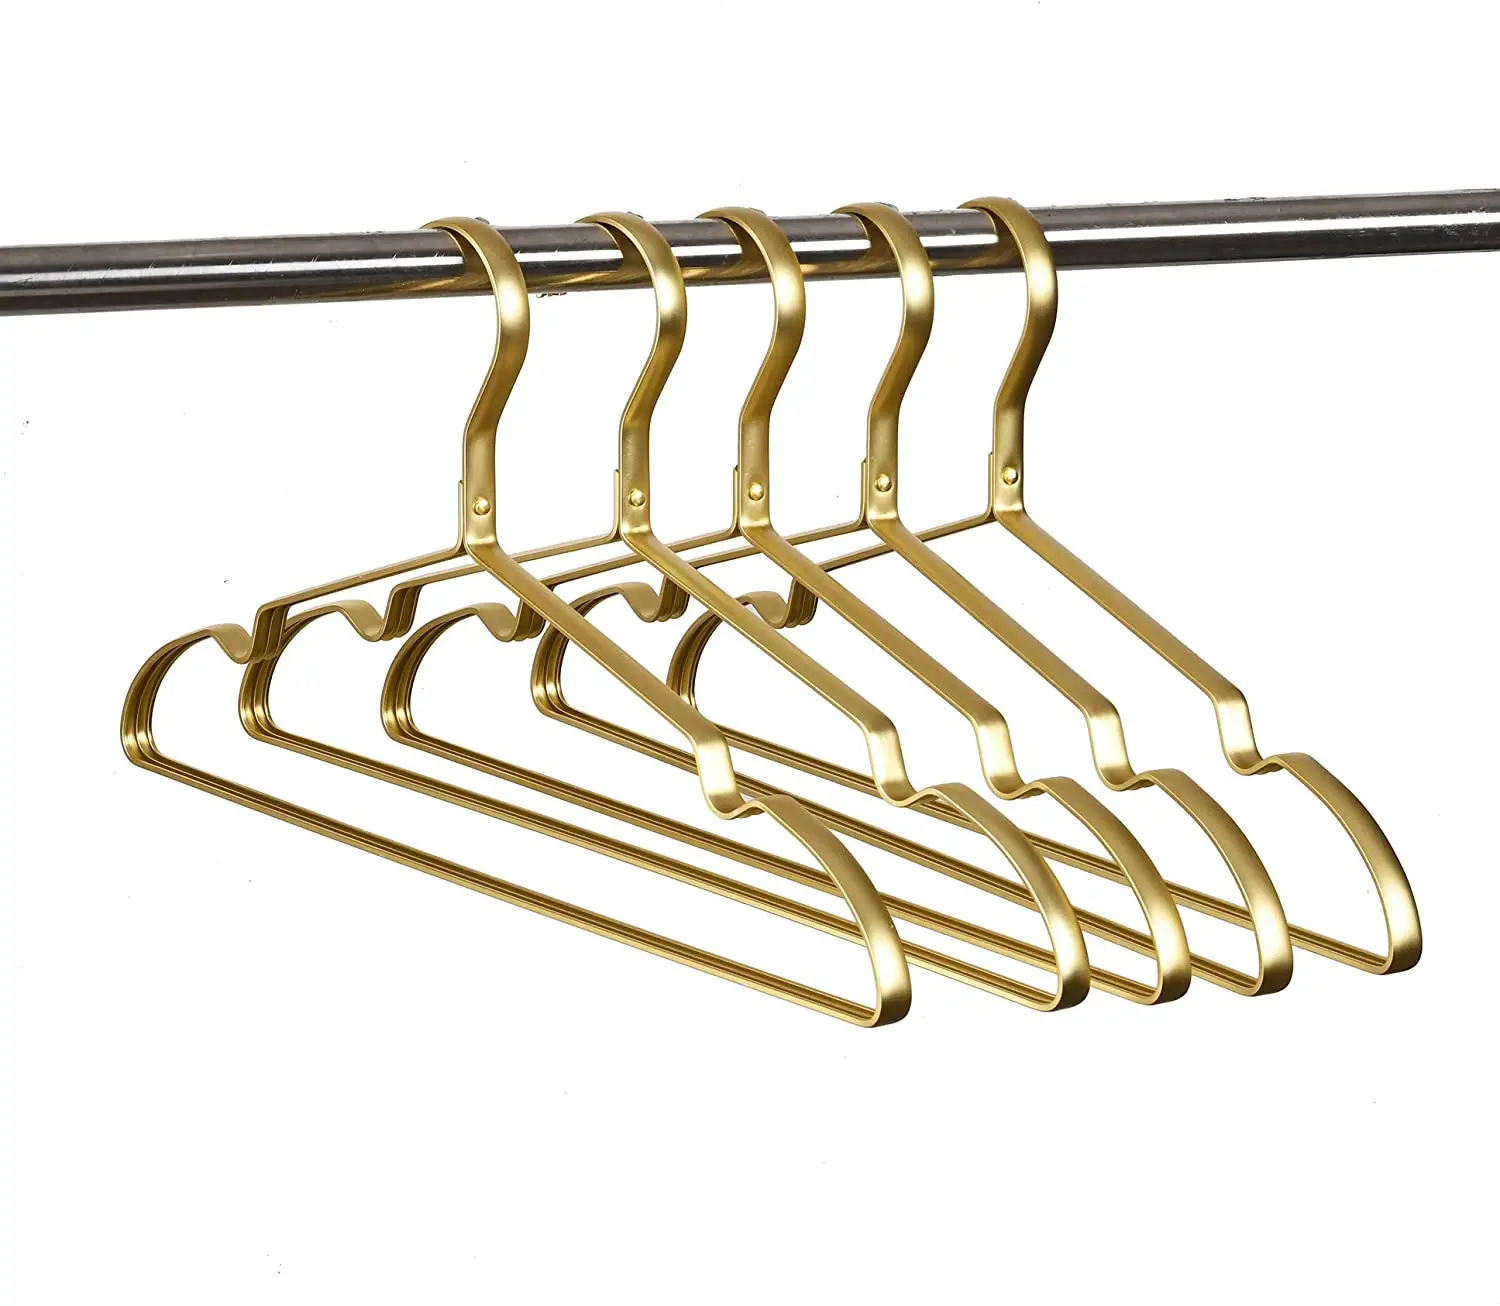 Premium Metal Coat Hangers - Gold